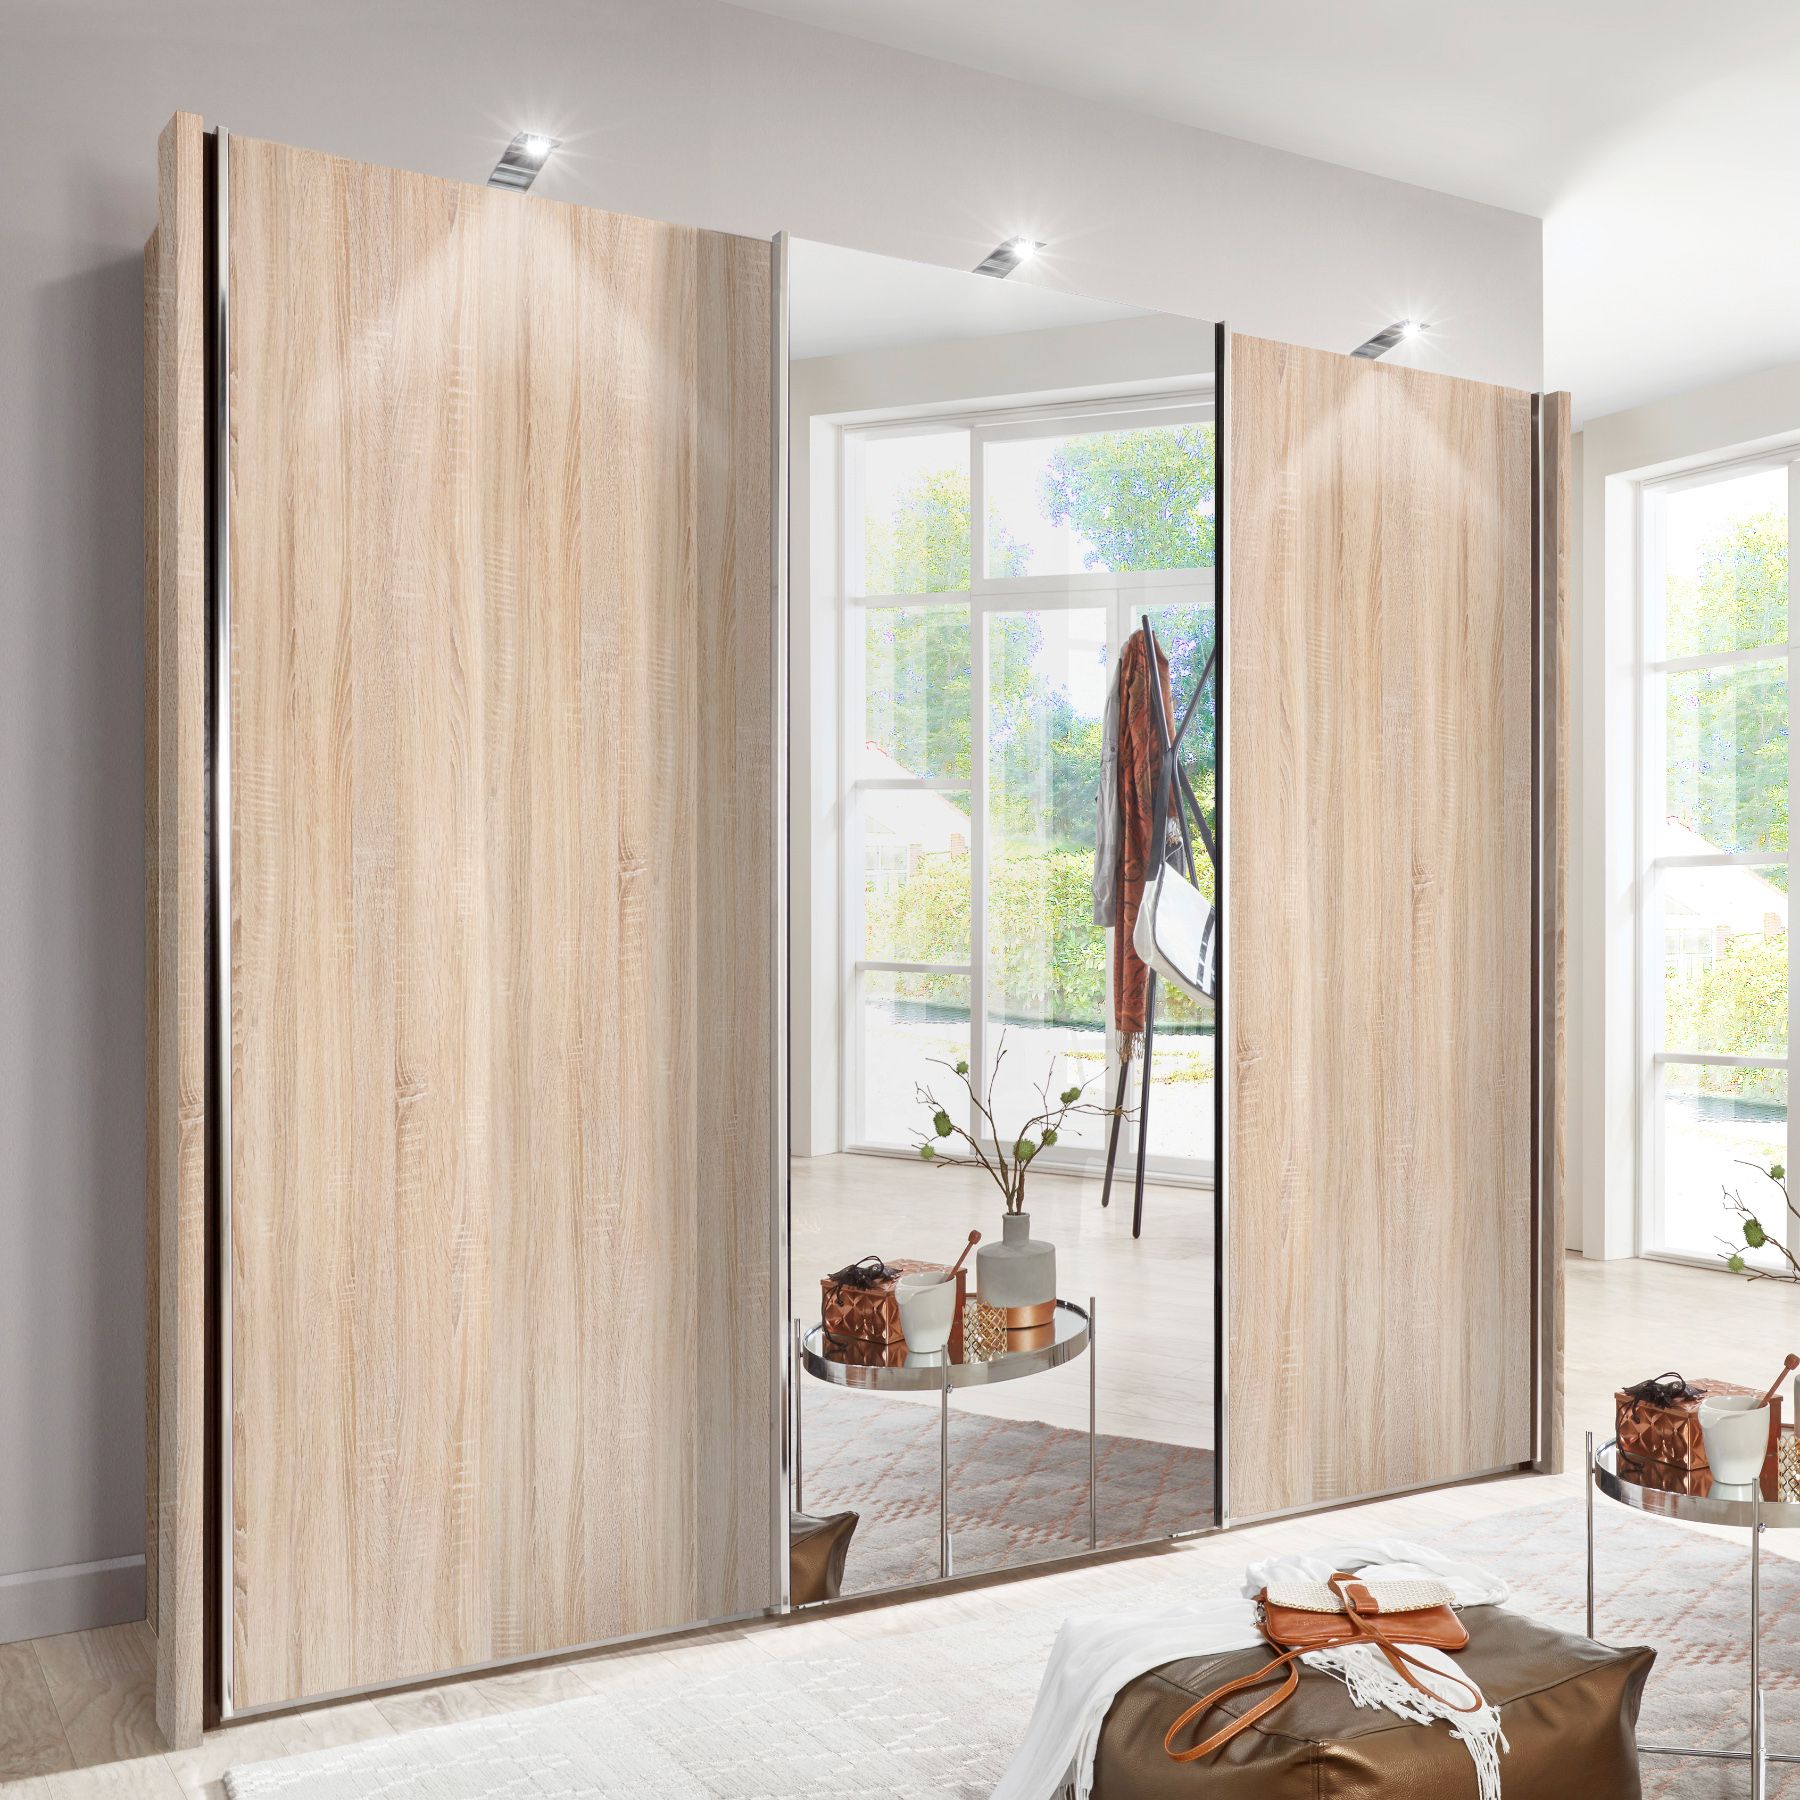 Monroe Plus – 2 Oak Doors & 1 Mirrored Door – 3 Door Sliding Wardrobe –  Semi Fitted Wardrobes – Progressive Furnishings Regarding Oak Mirrored Wardrobes (View 3 of 20)